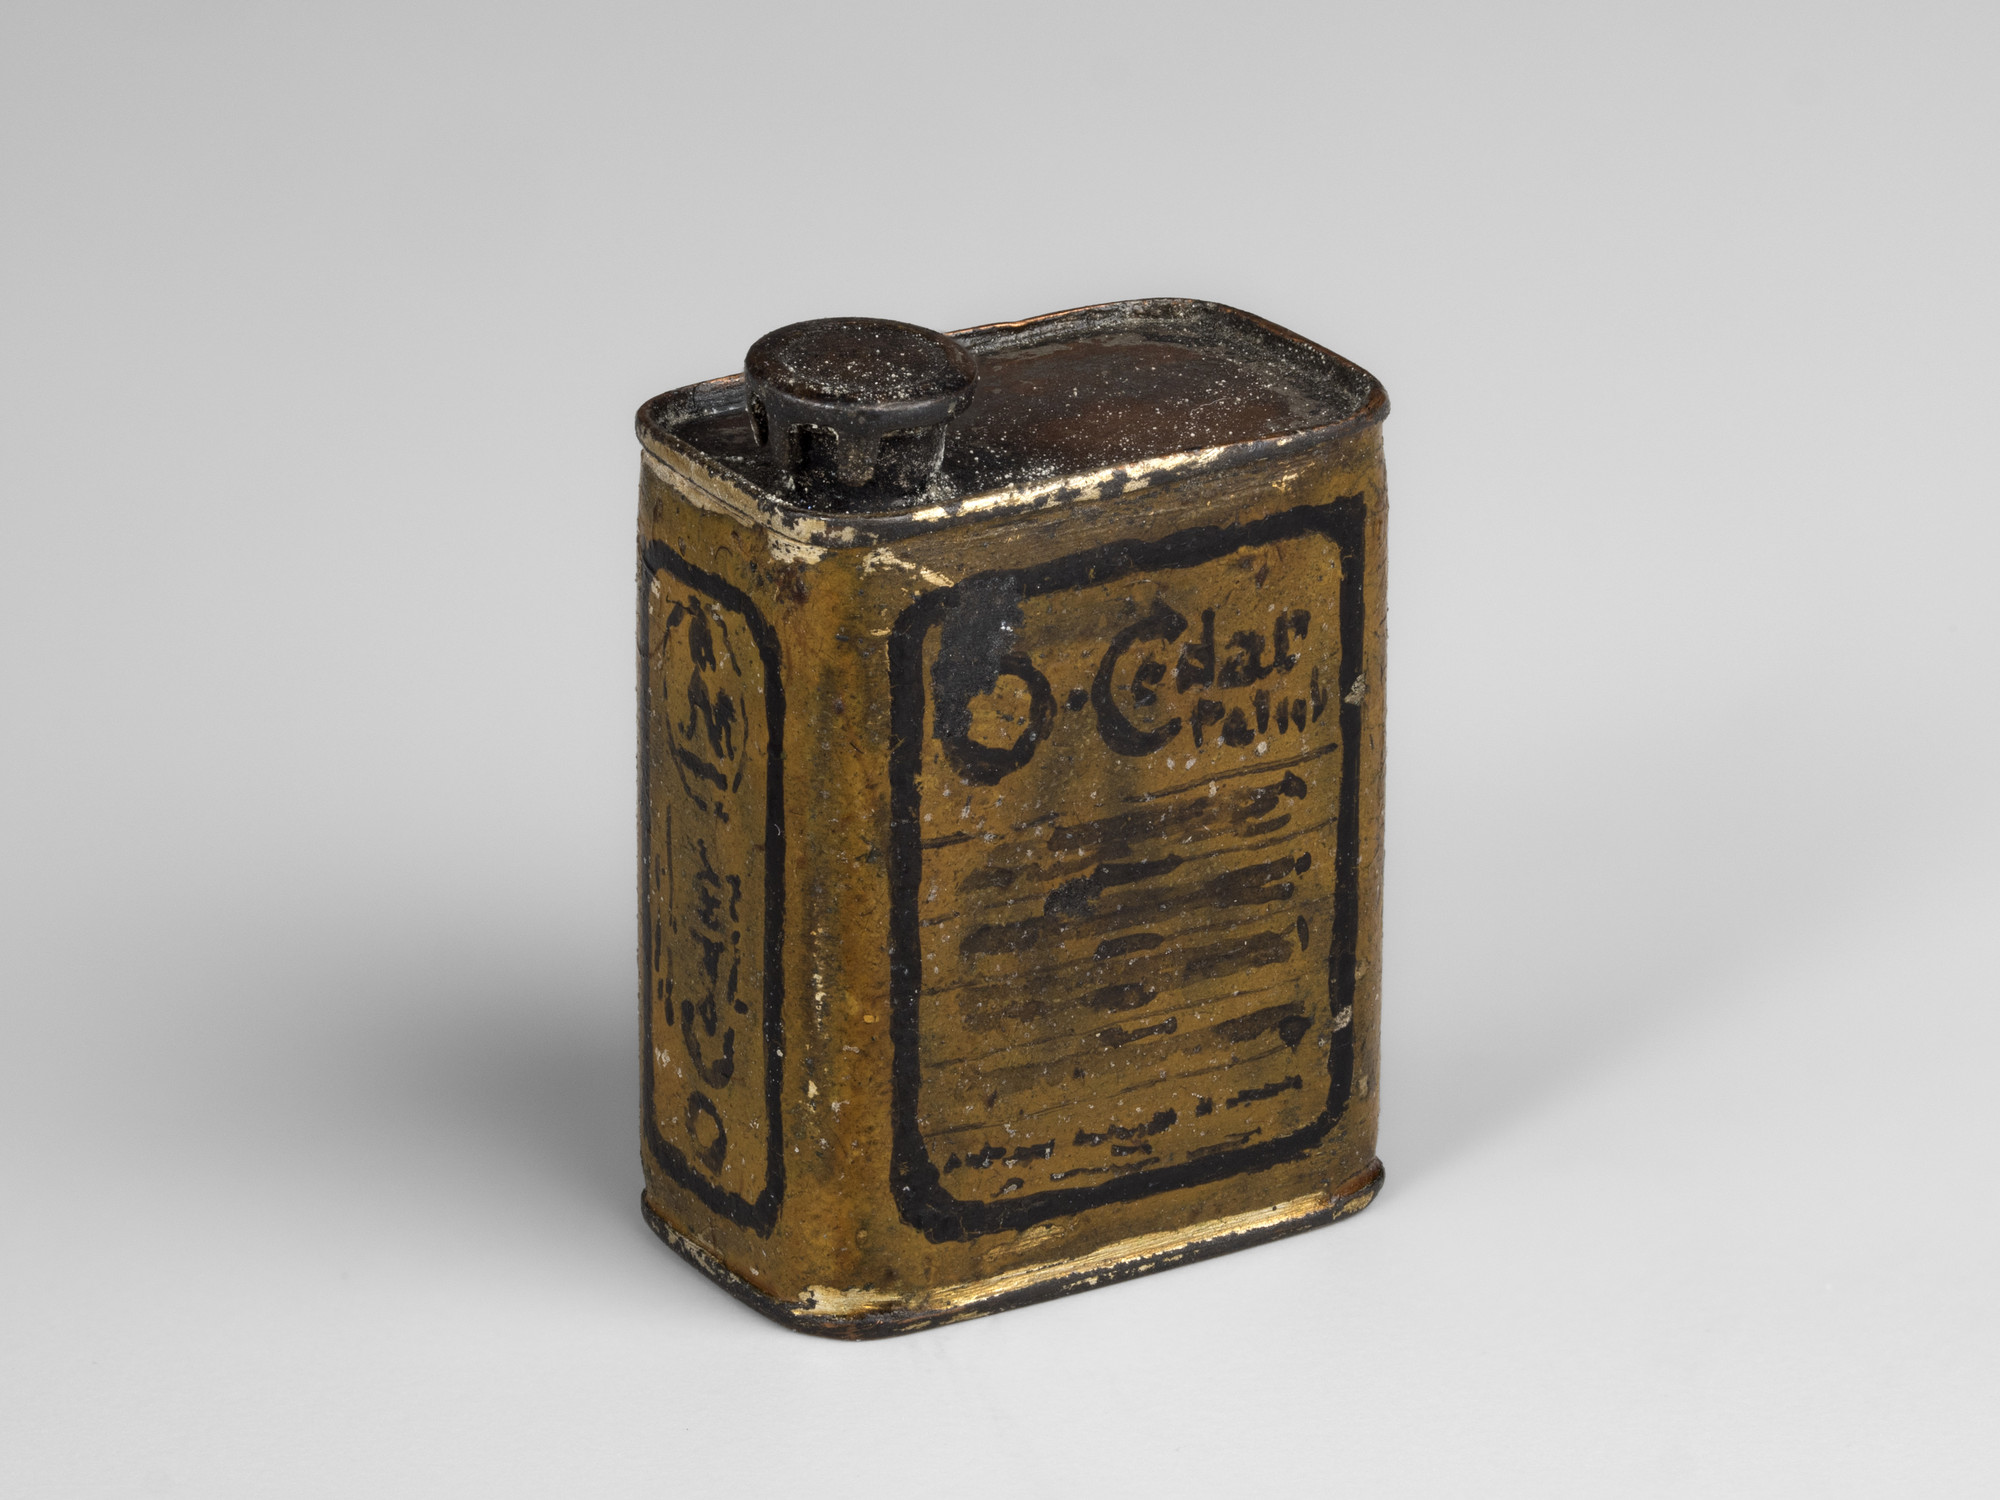 A miniature rectangular tin of O'Cedar polish